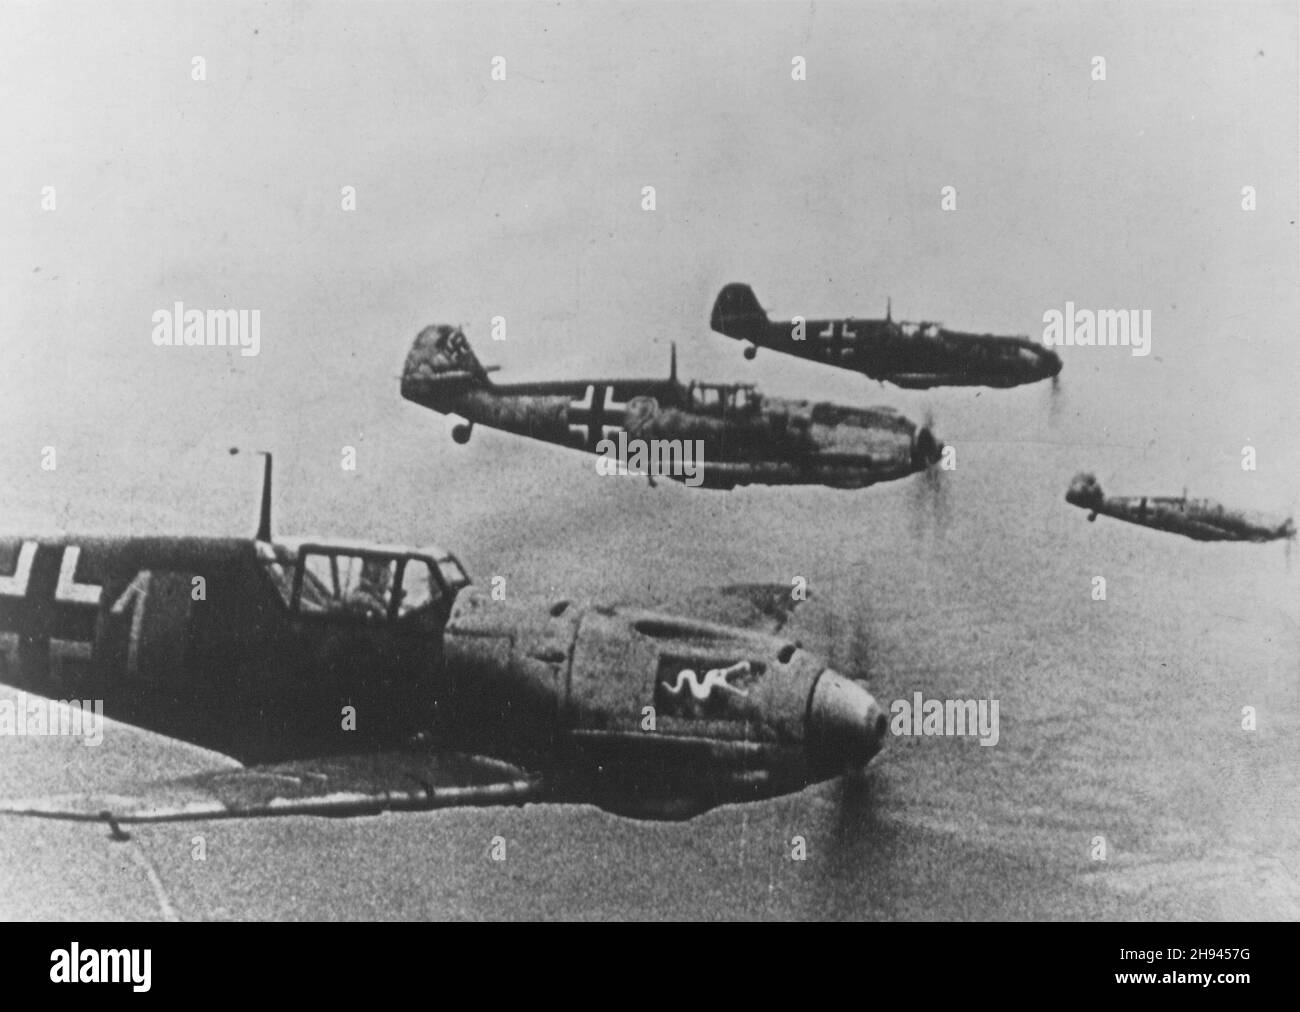 INGHILTERRA - Estate 1940 - Luftwaffe Messerschmitt BF-109 caccia in formazione da qualche parte in Inghilterra durante la battaglia di Gran Bretagna - Foto: Geopi Foto Stock